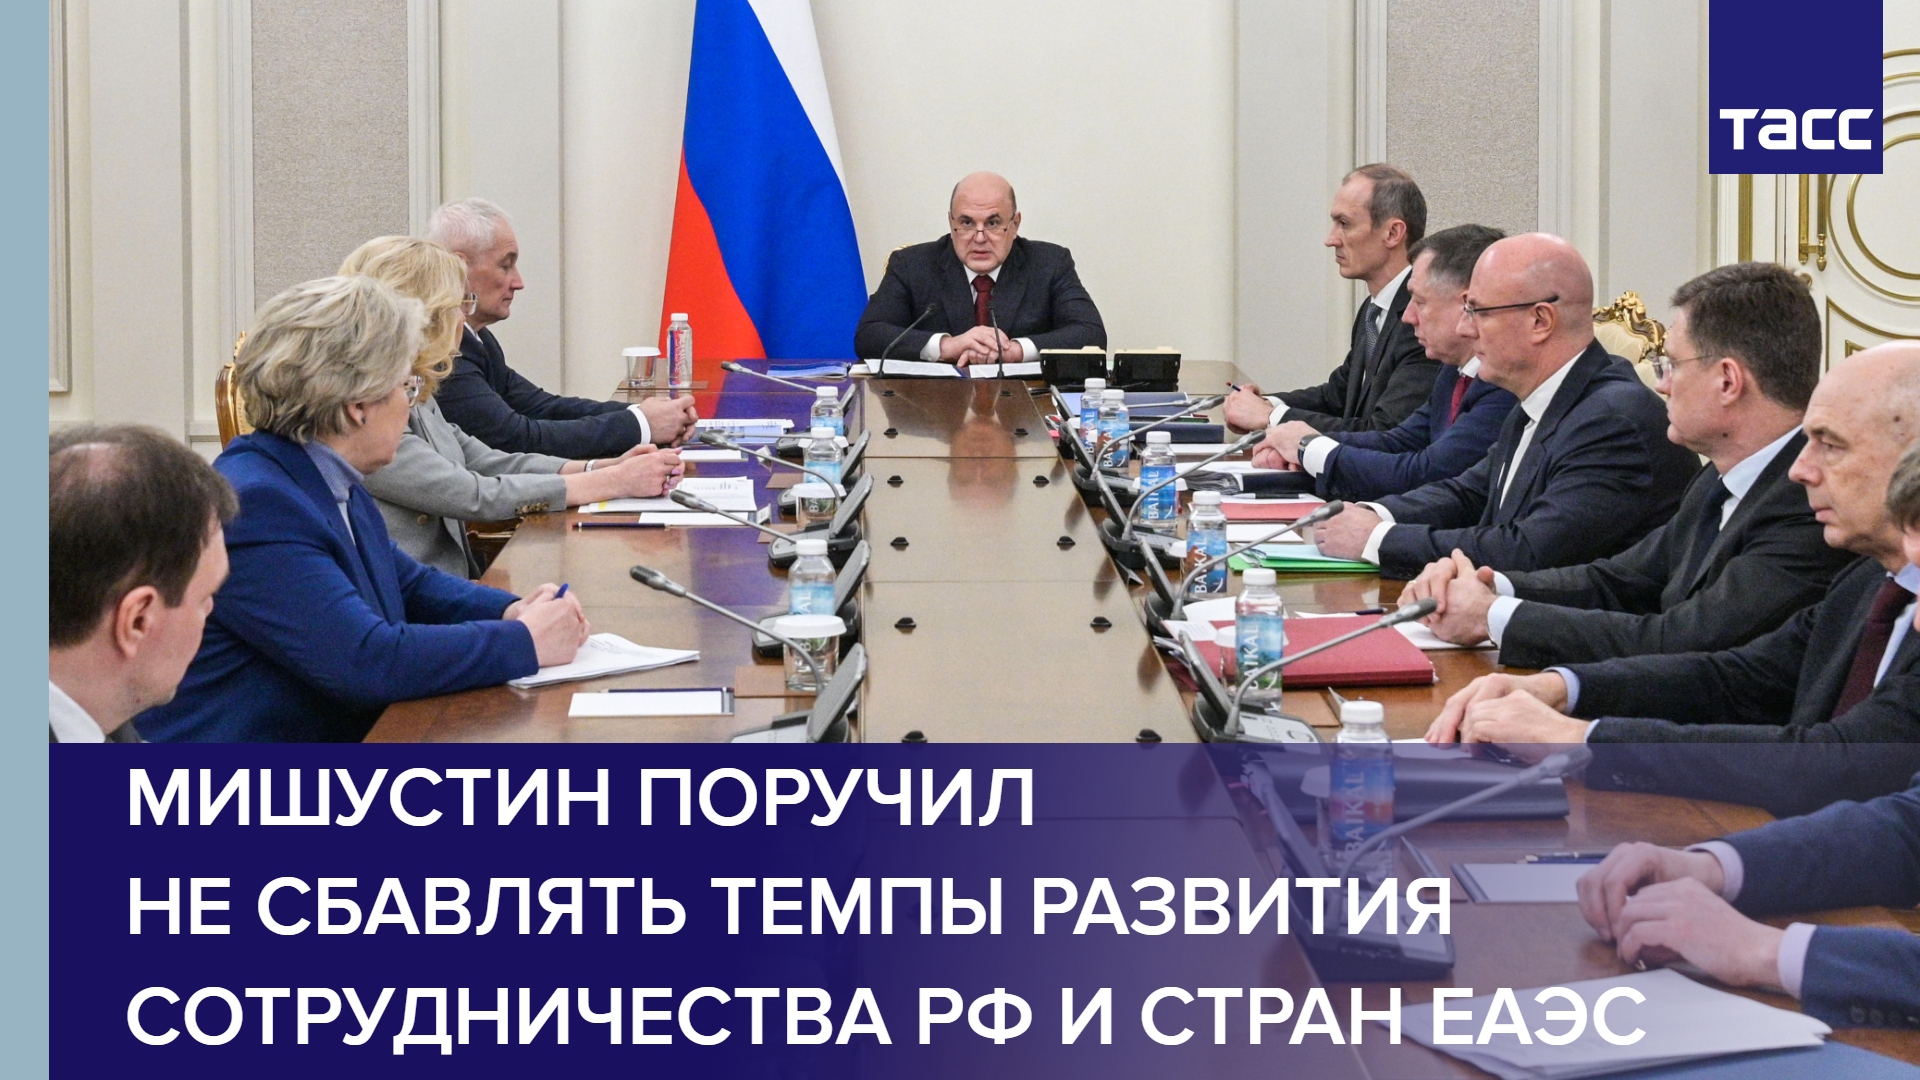 Мишустин поручил не сбавлять темпы развития сотрудничества РФ и стран ЕАЭС